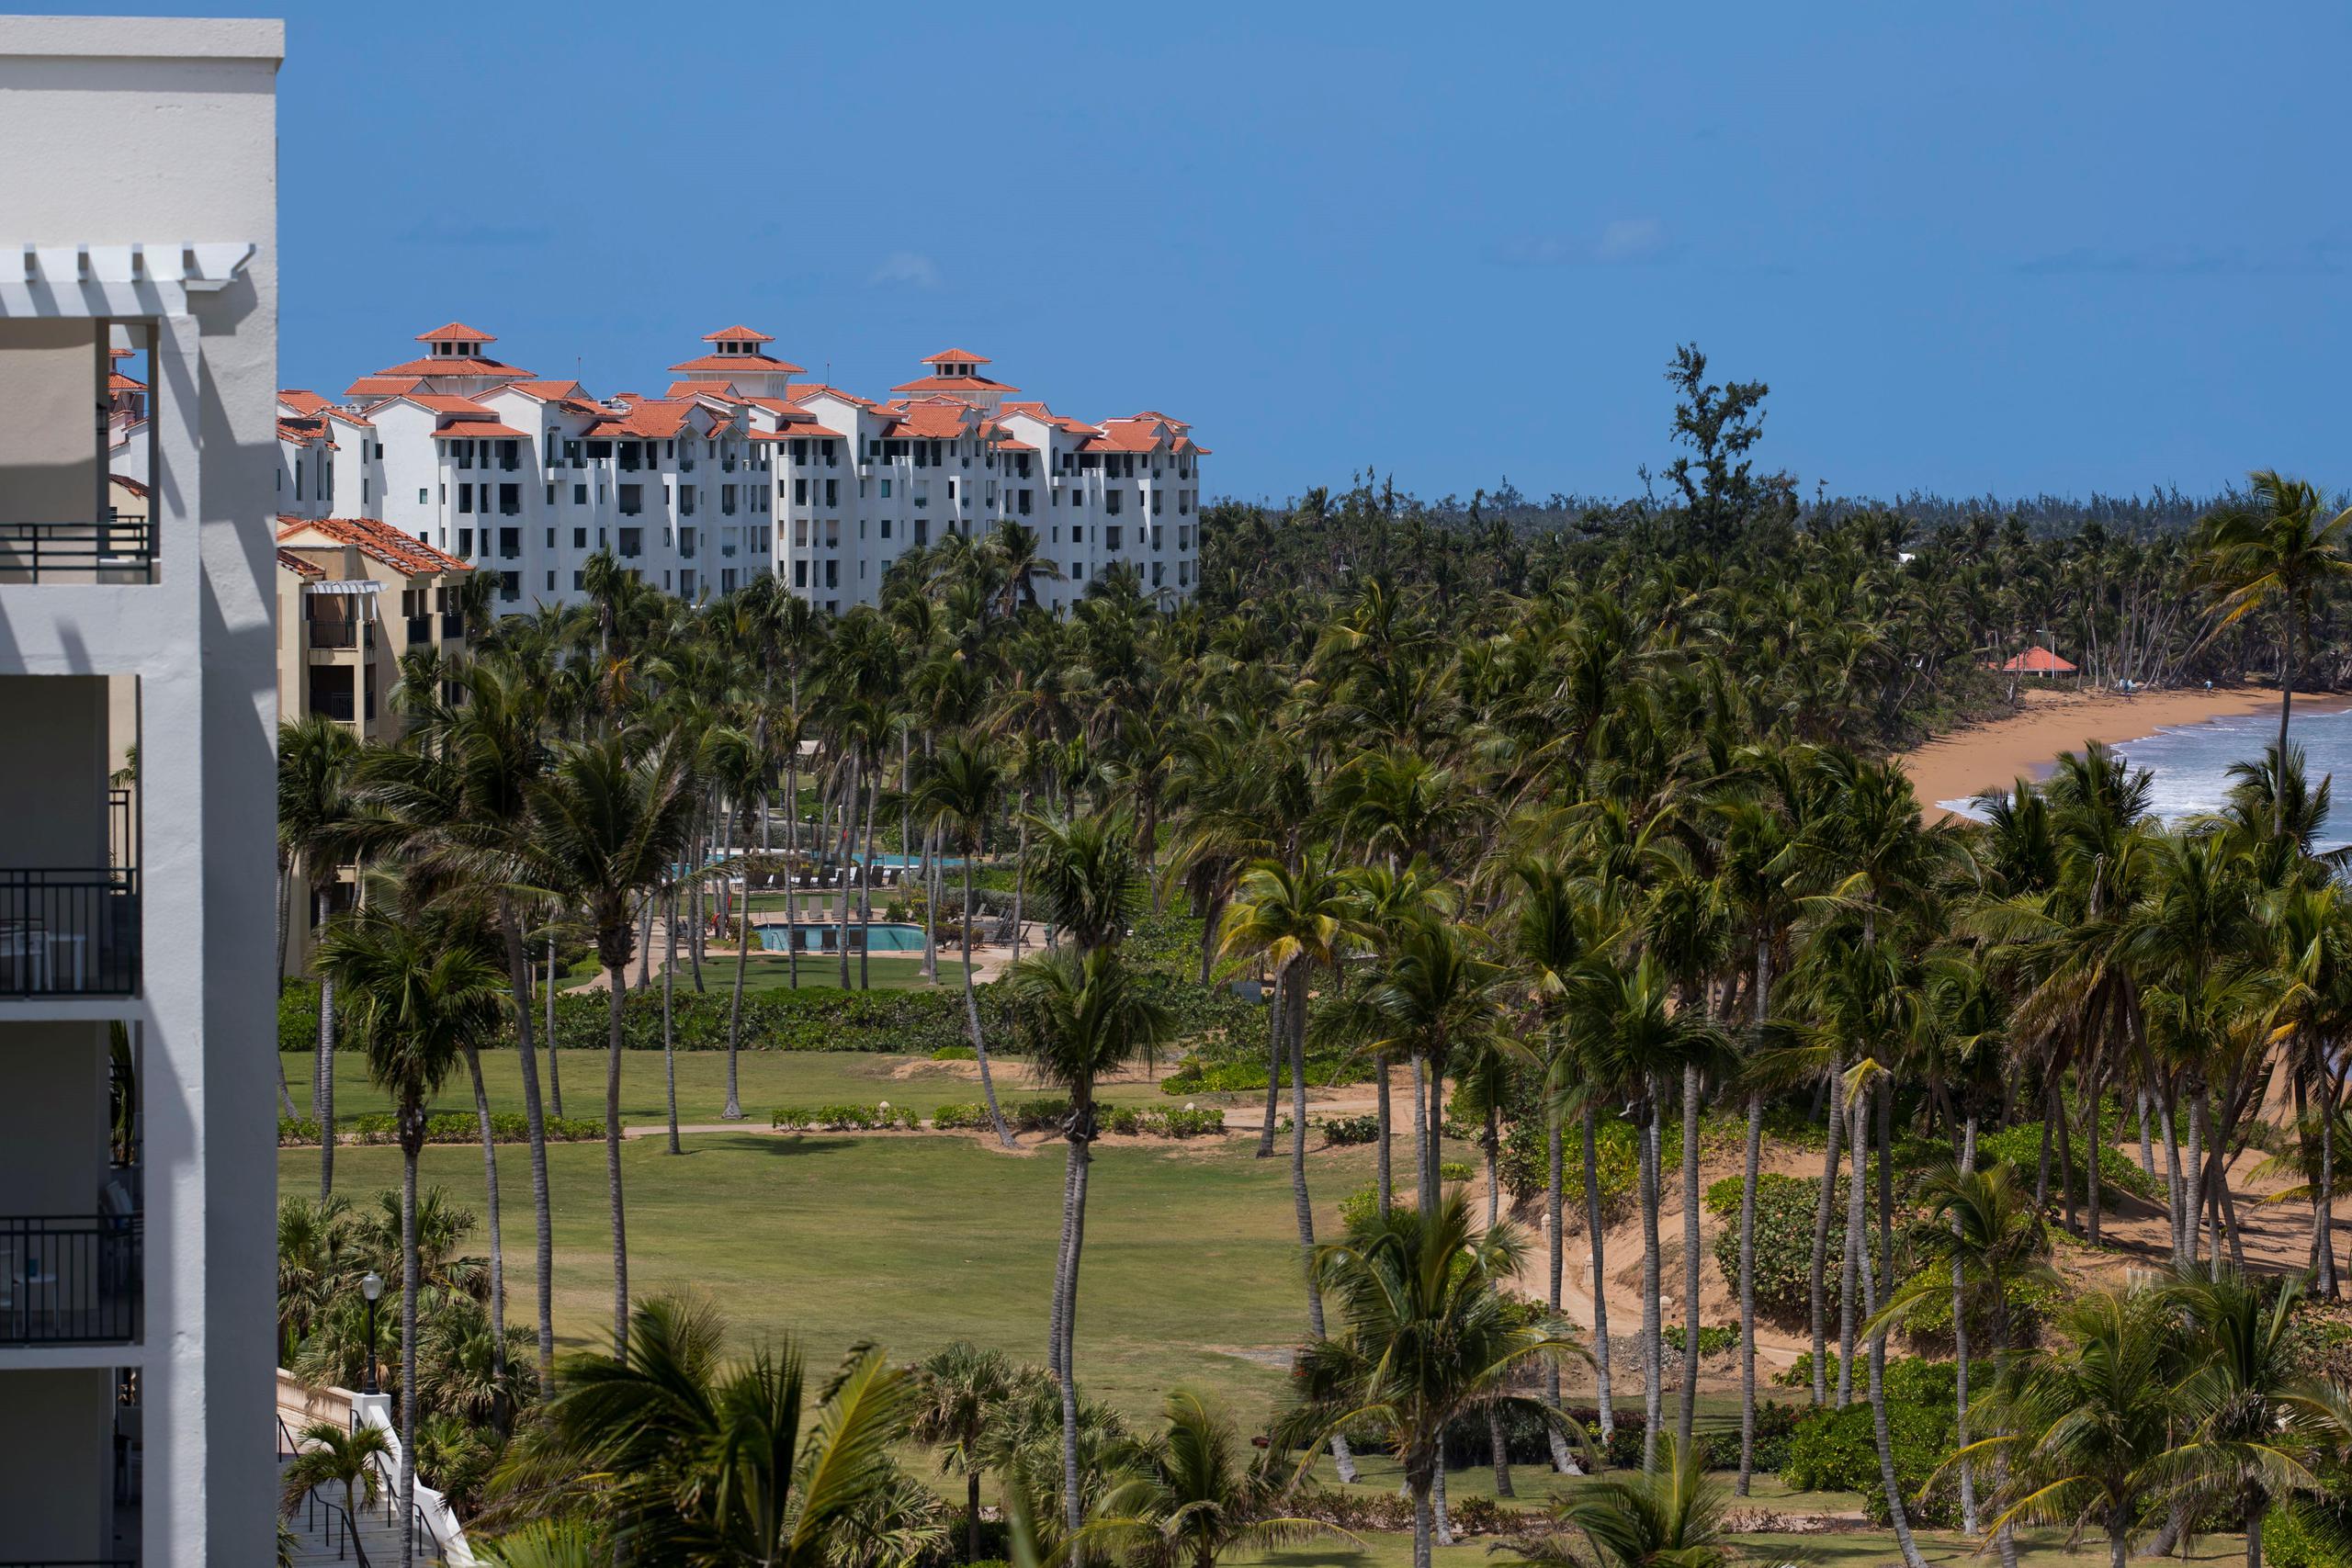 Vista de parte del Wyndham Grand Rio Mar Puerto Rico Golf & Beach Resort, en Río Grande, y la playa, a la que se permitirá acceso para las actividades permitidas por el gobierno, como hacer ejercicios y deportes.